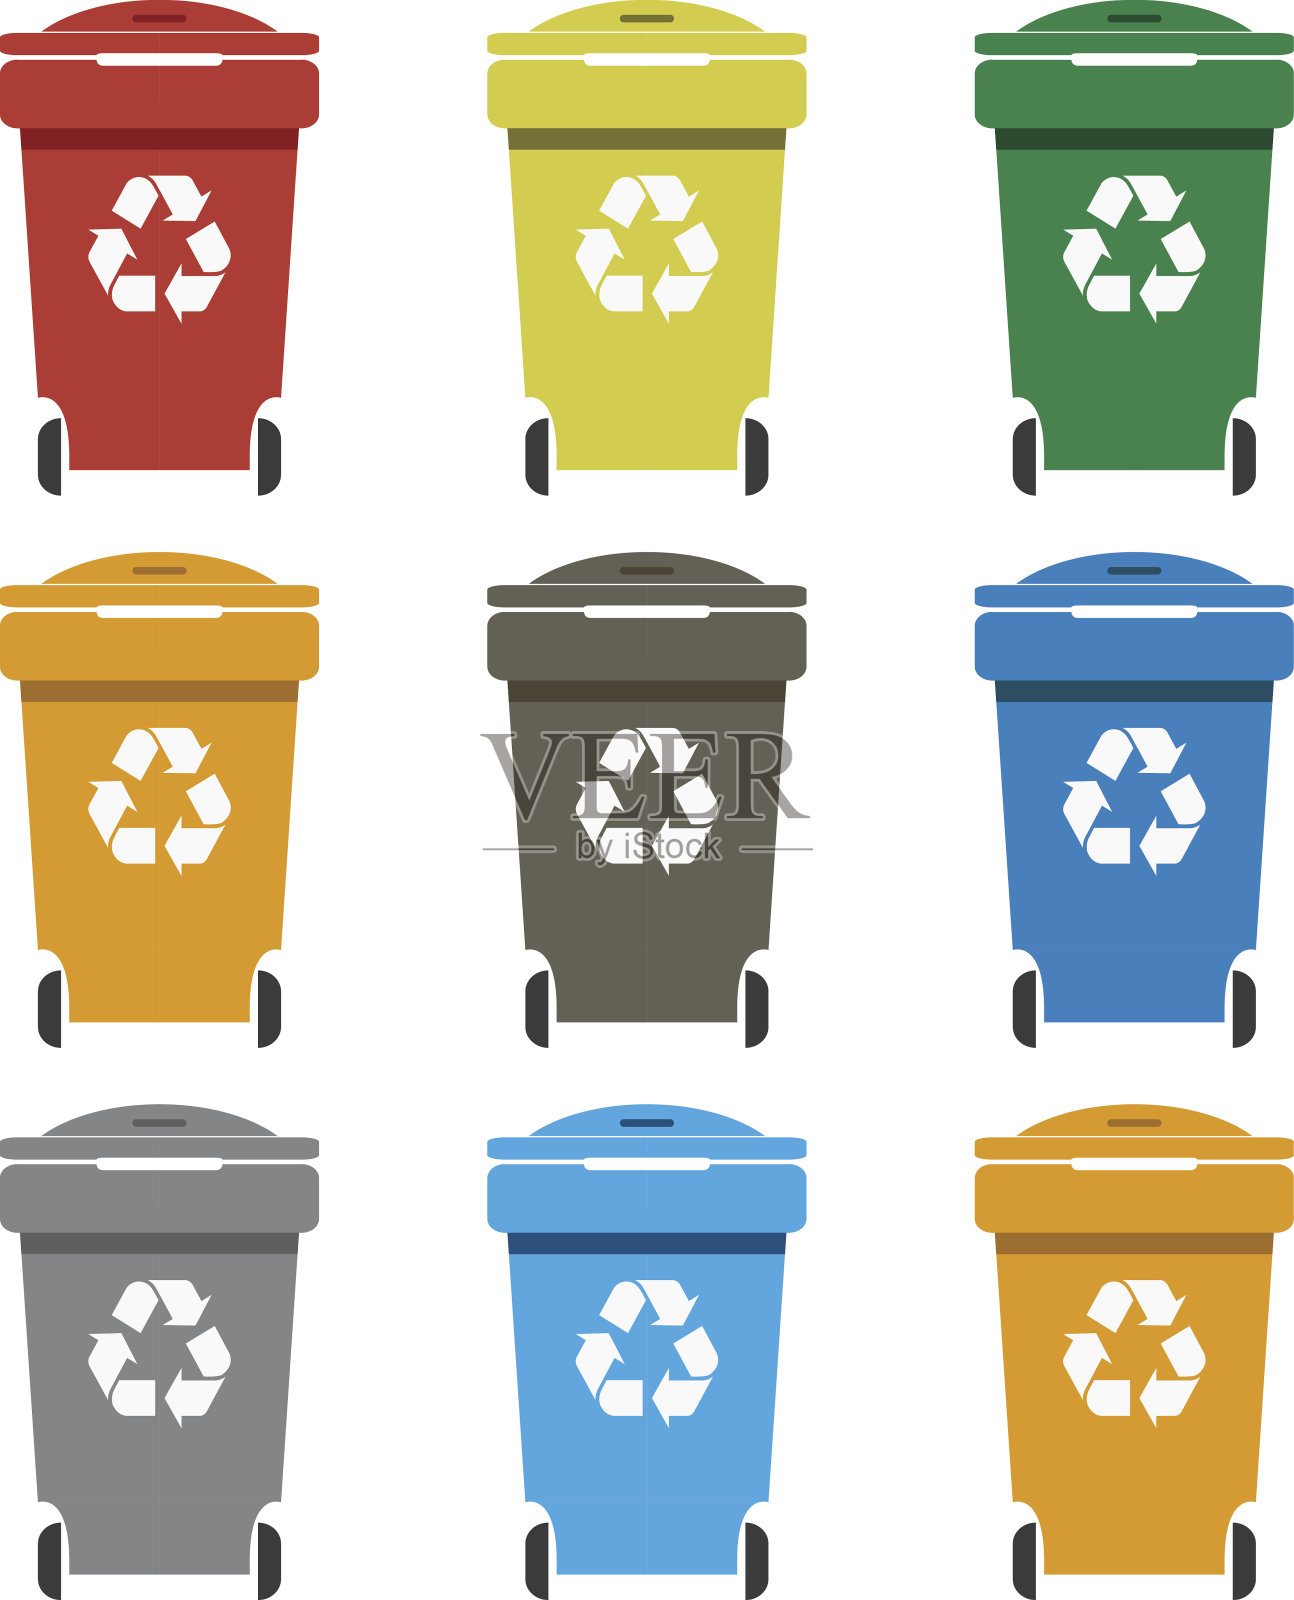 不同颜色的回收垃圾桶矢量图。装垃圾的垃圾箱。设计元素图片